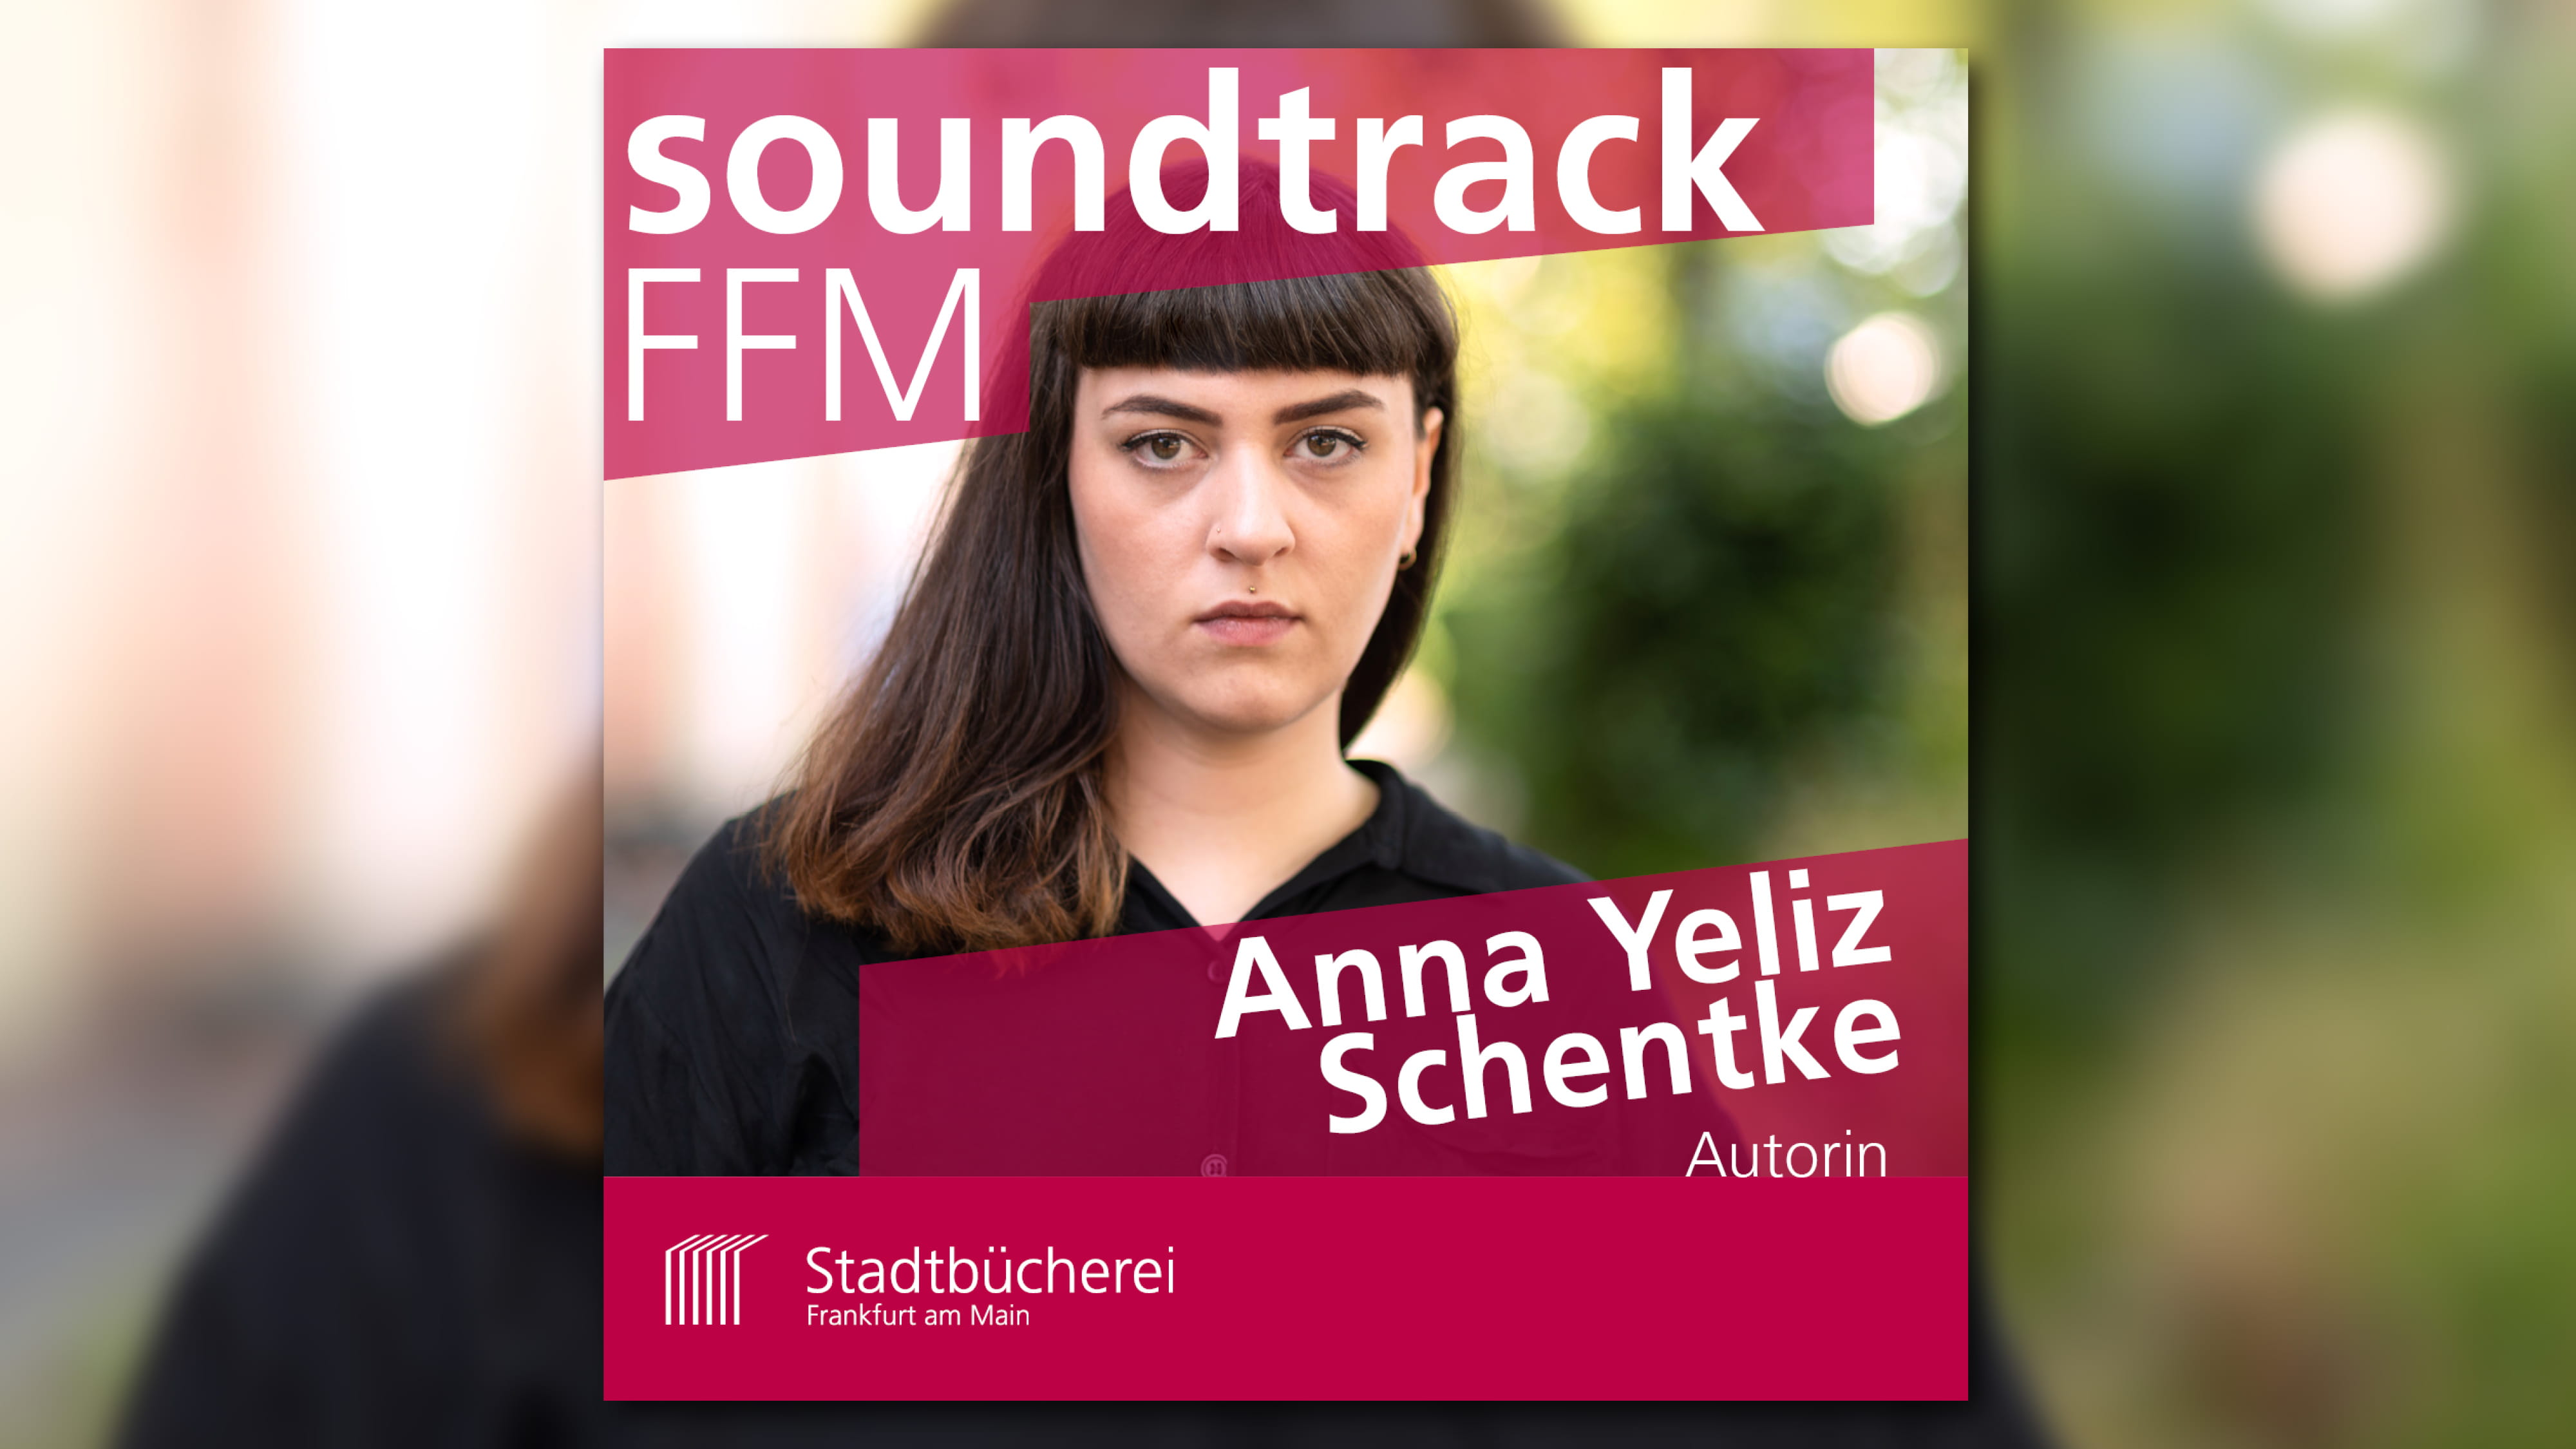 soundtrackFFM mit Autorin Anna Yeliz Schentke